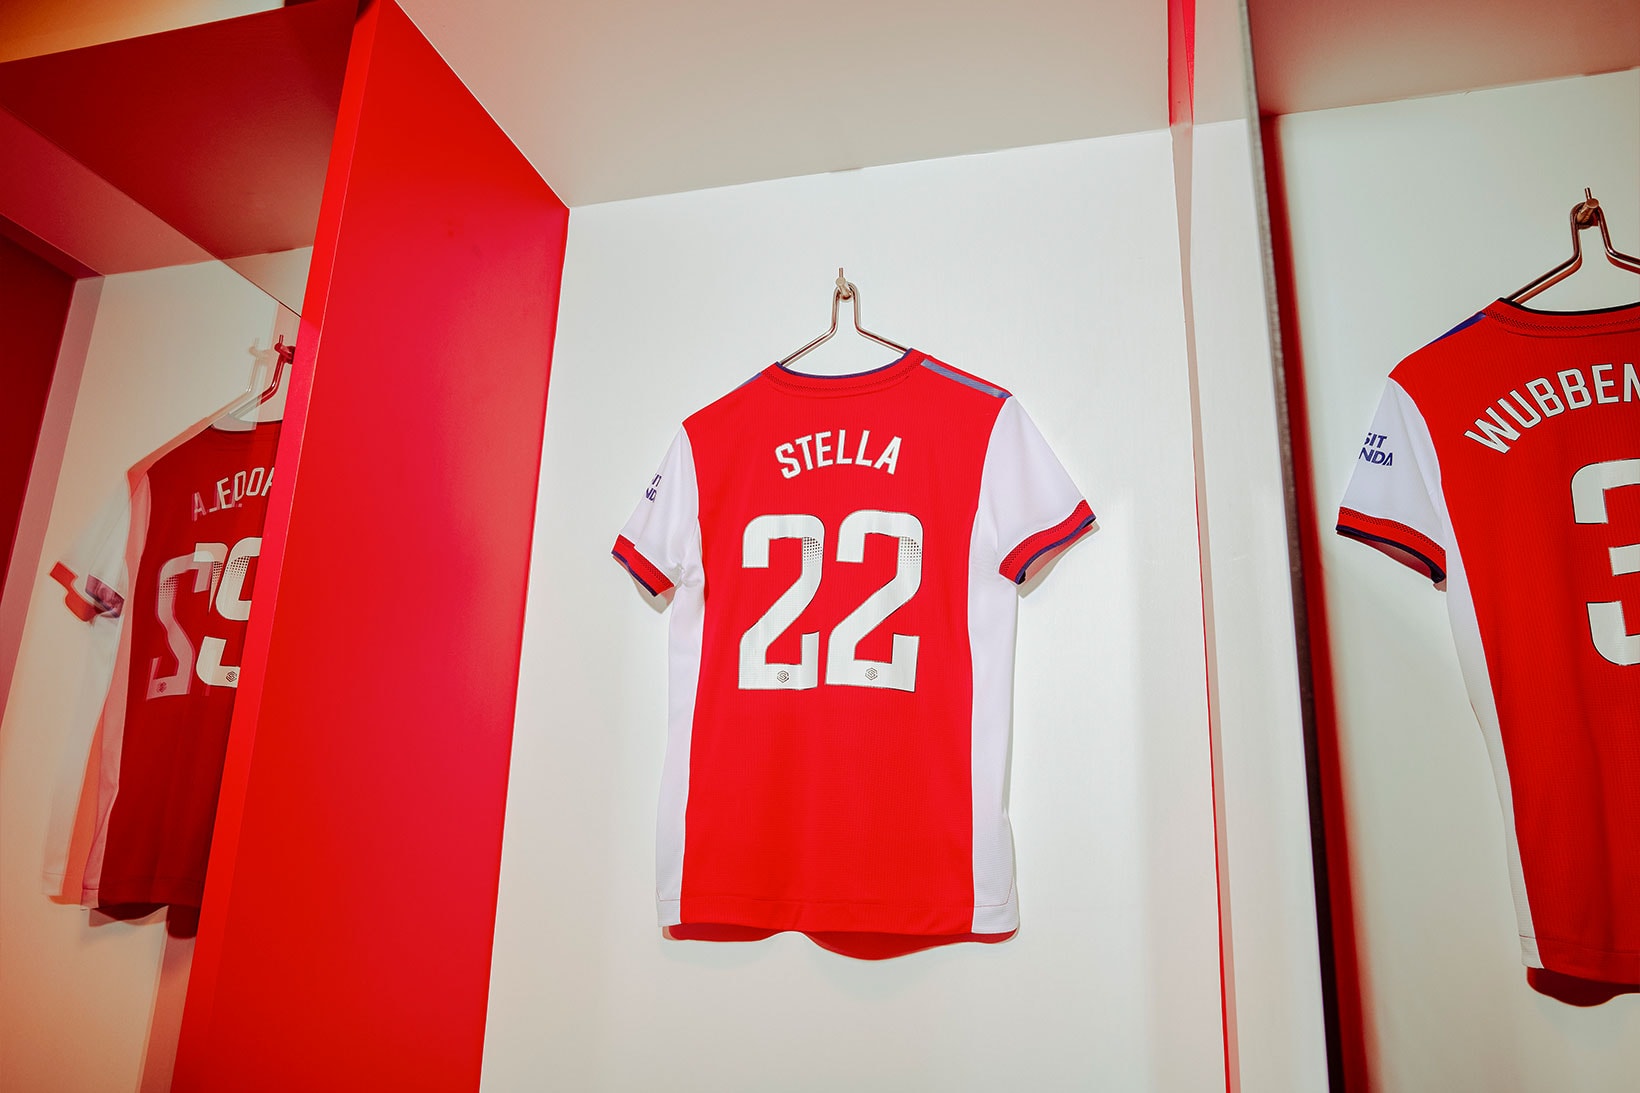 Arsenal x adidas by Stella McCartney Leggings